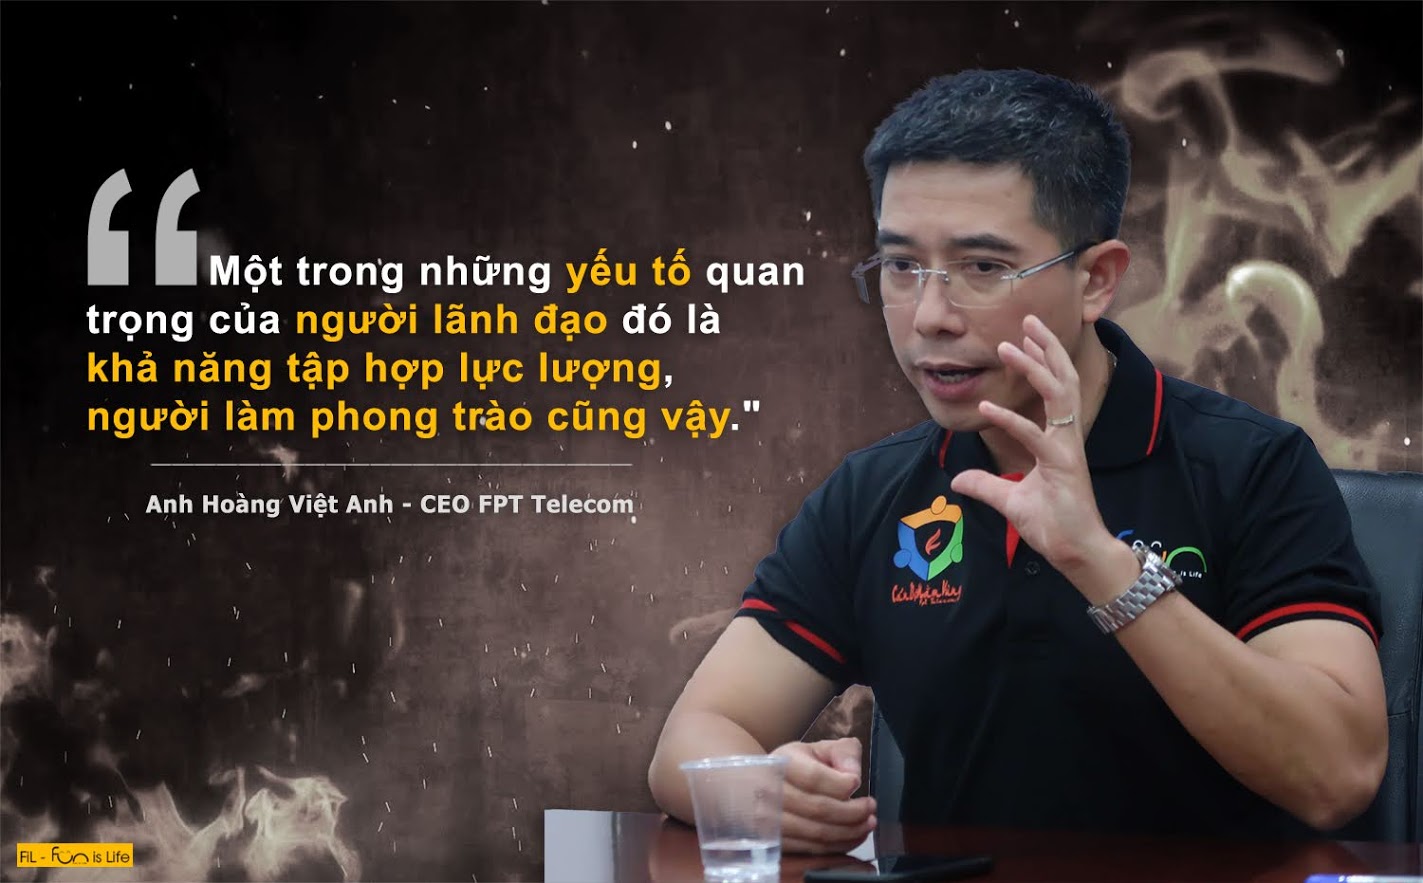 Ông Hoàng Việt Anh là người có những đóng góp quan trọng trong việc giúp FPT Software đánh thắng các dự án triệu USD tại thị trường nước ngoài.